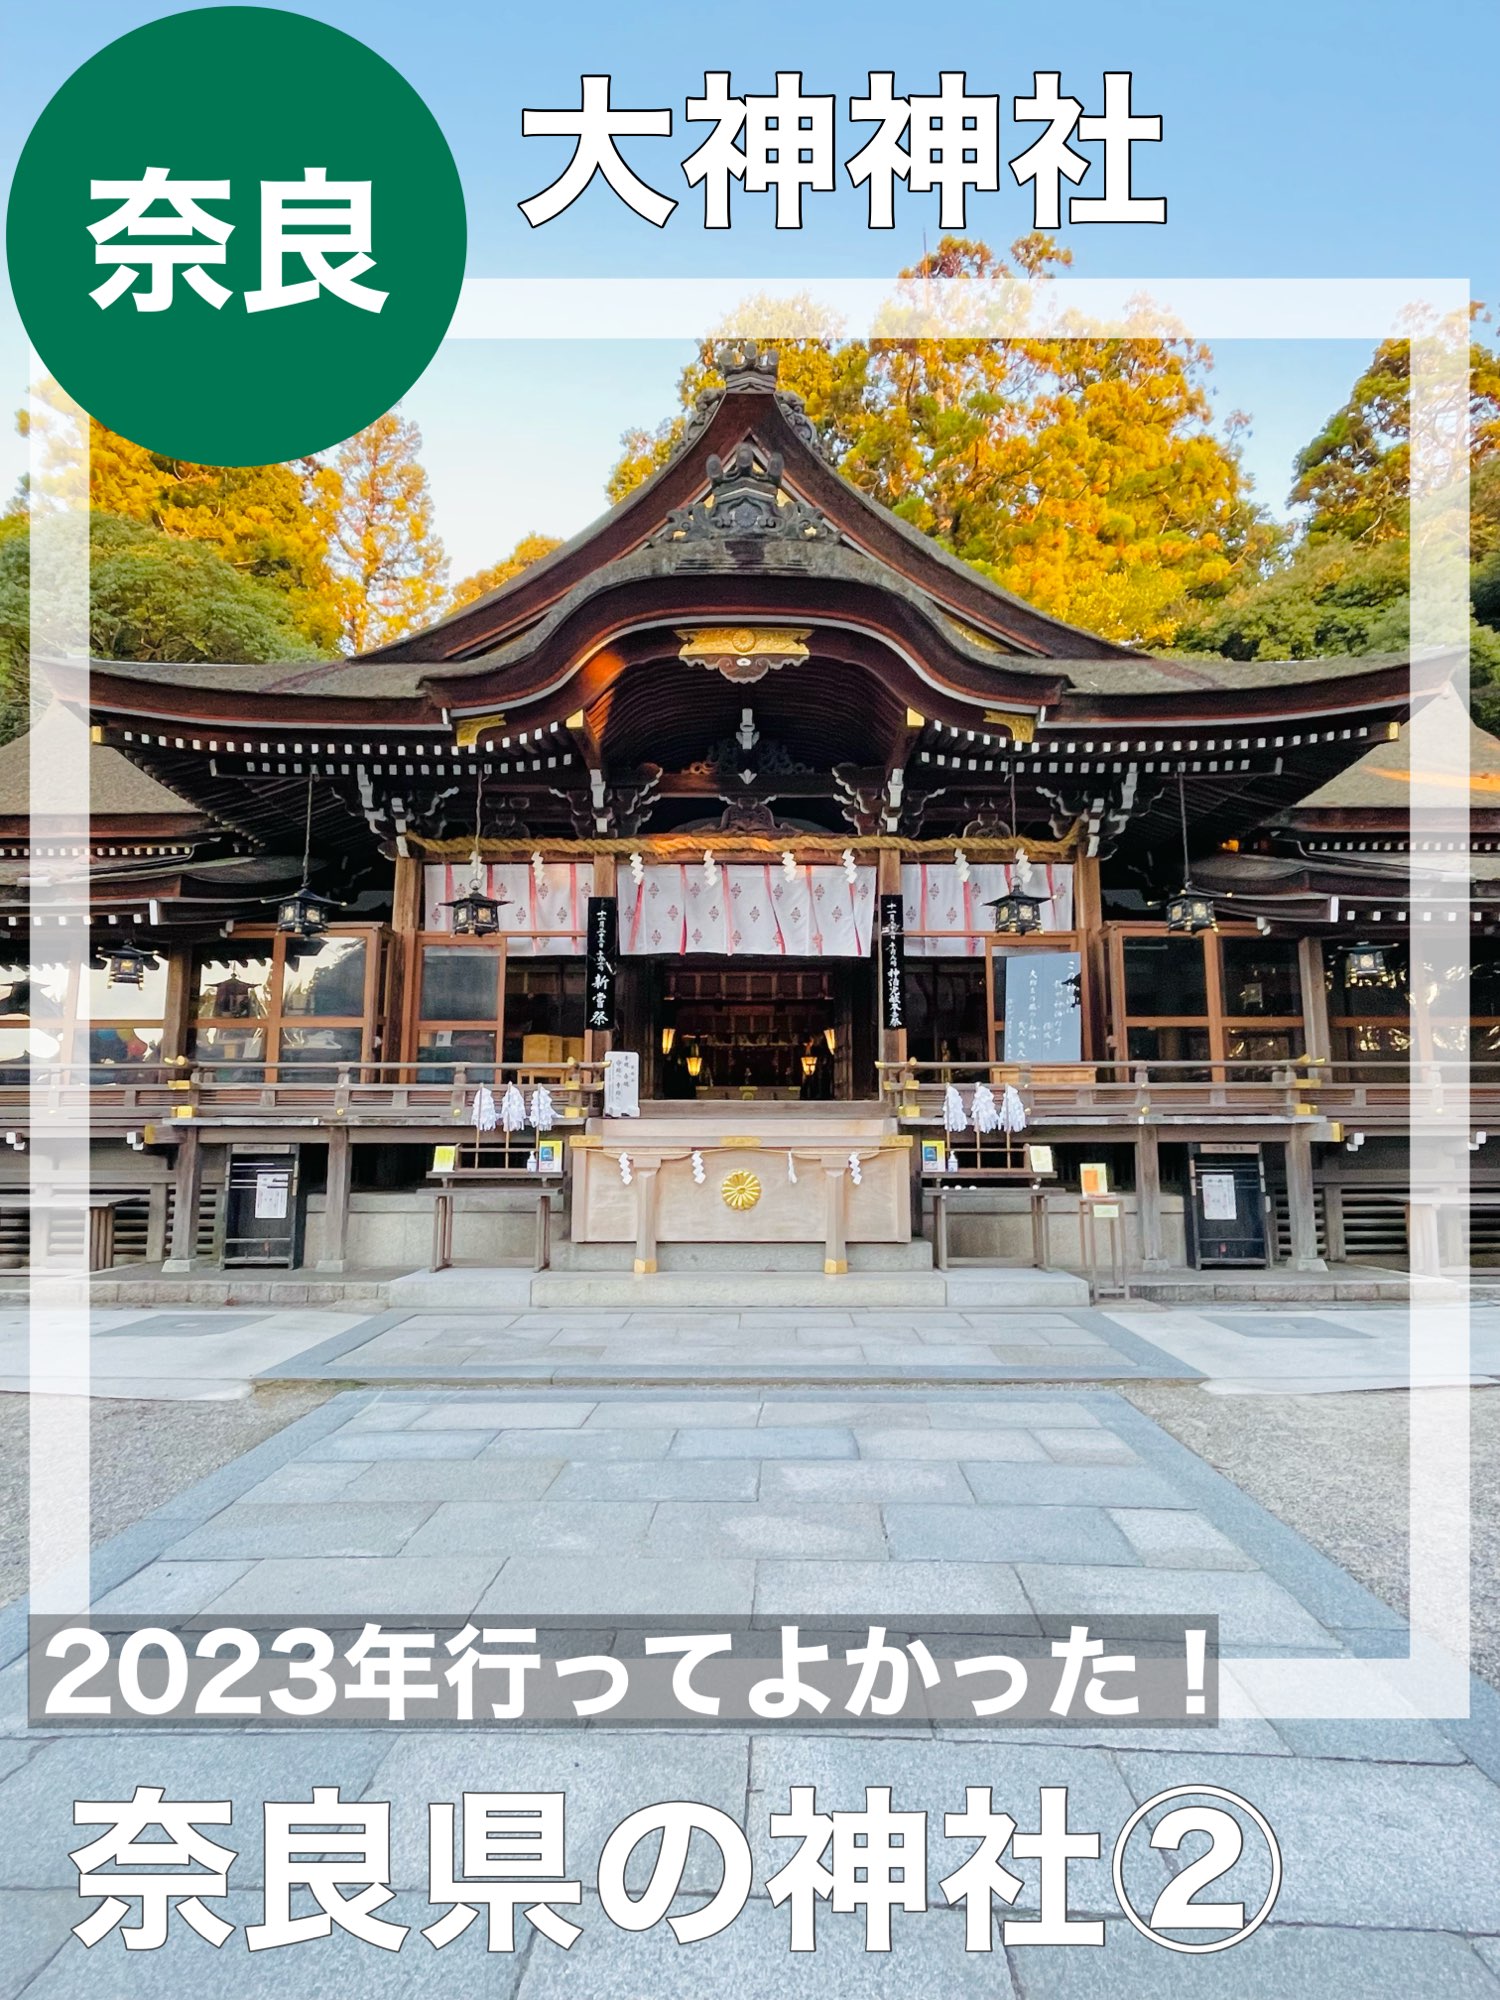 [奈良县/大神神社]我很高兴我去了2023年!奈良县神社②